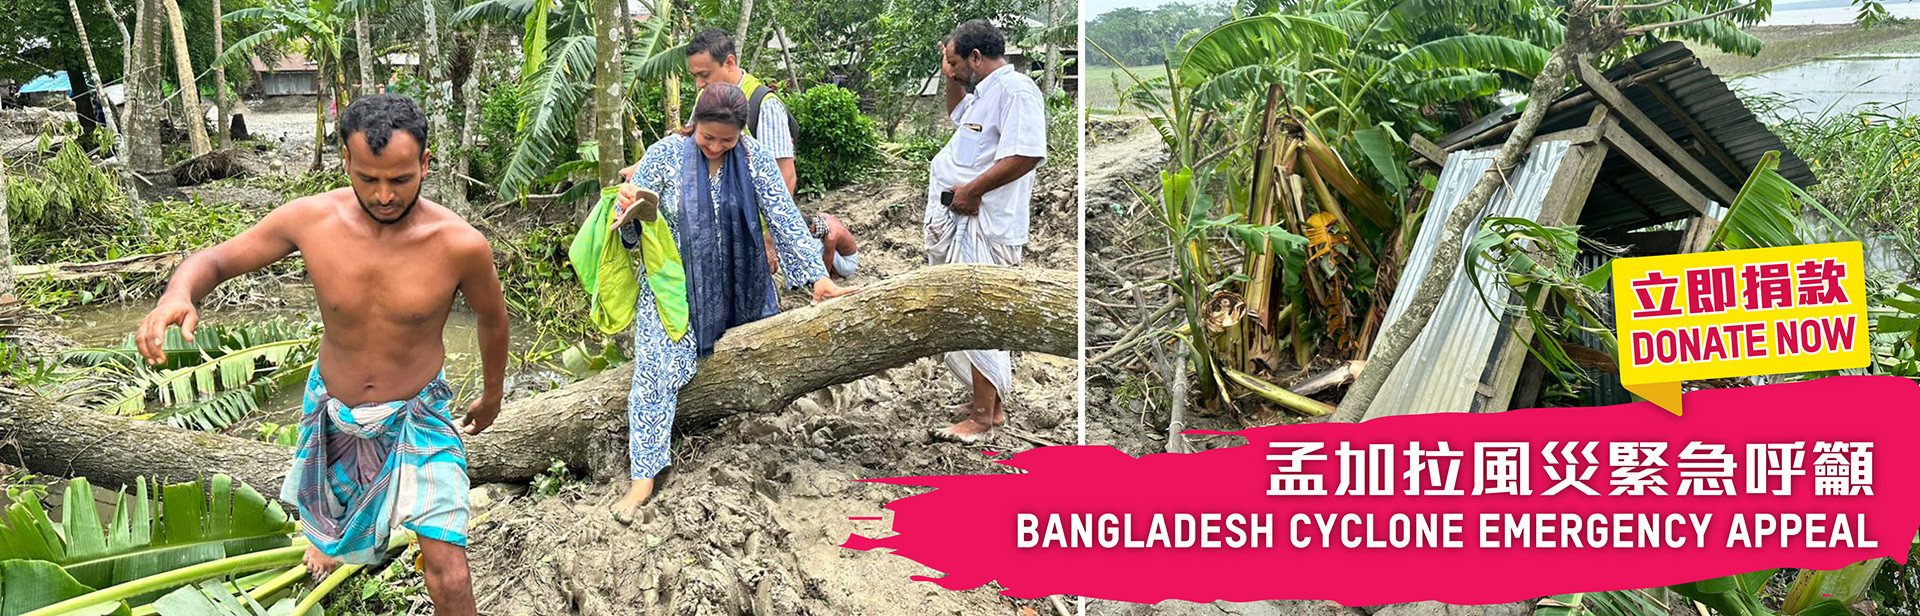 孟加拉风灾紧急呼吁